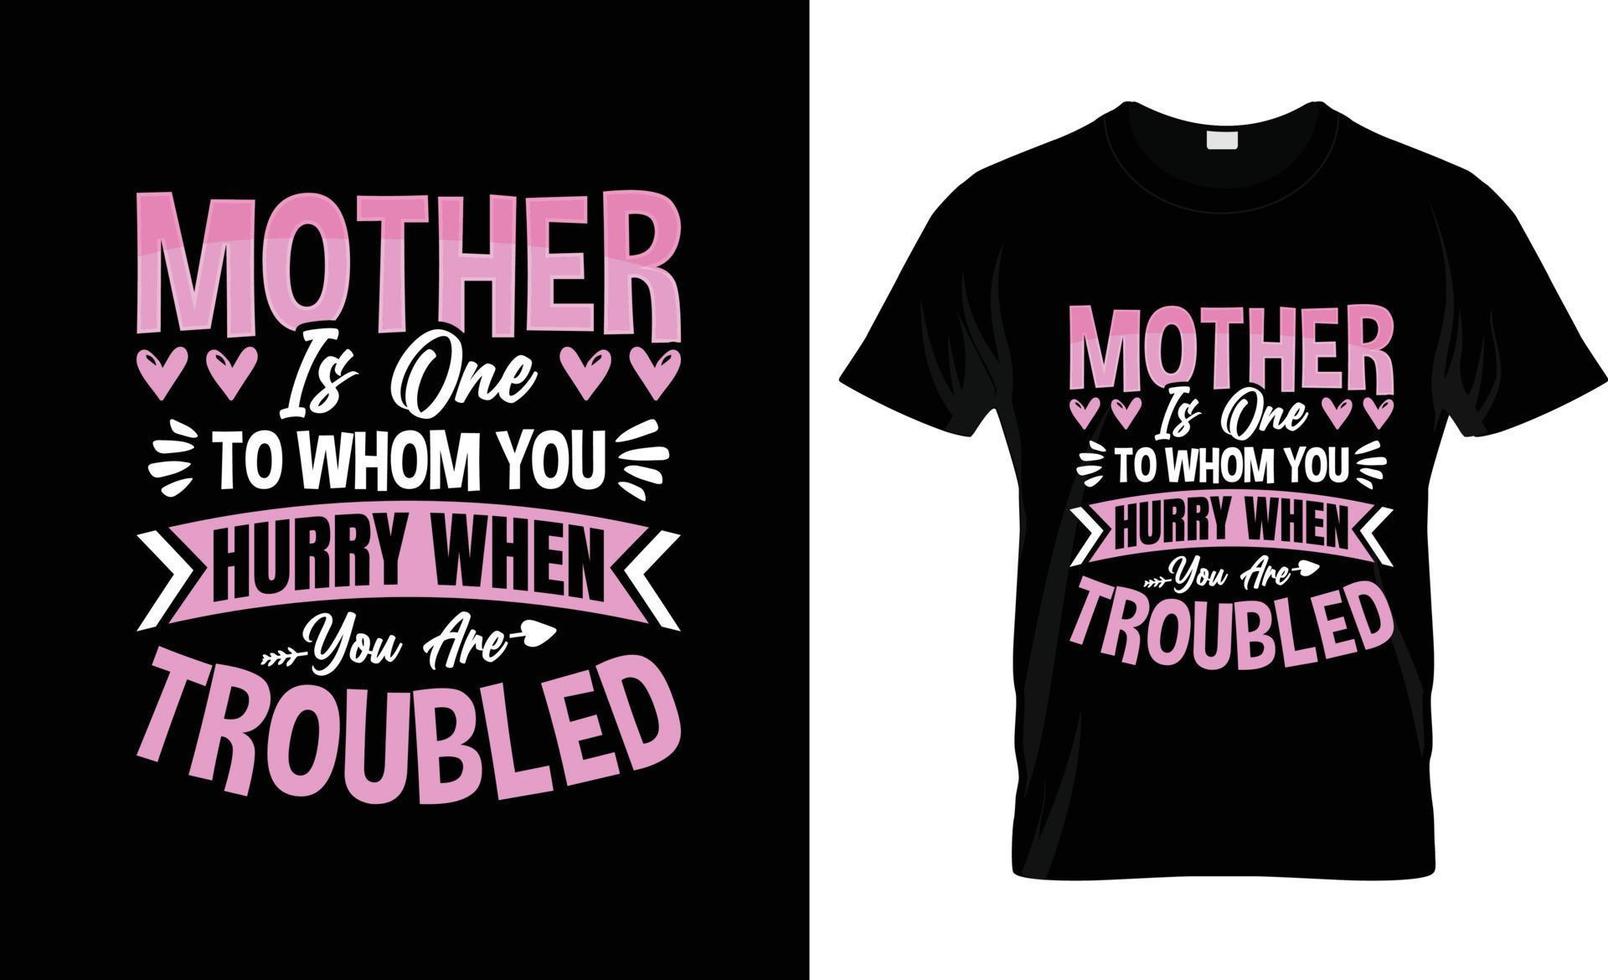 design de camiseta do dia das mães, slogan de camiseta do dia das mães e design de vestuário, tipografia do dia das mães, vetor do dia das mães, ilustração do dia das mães